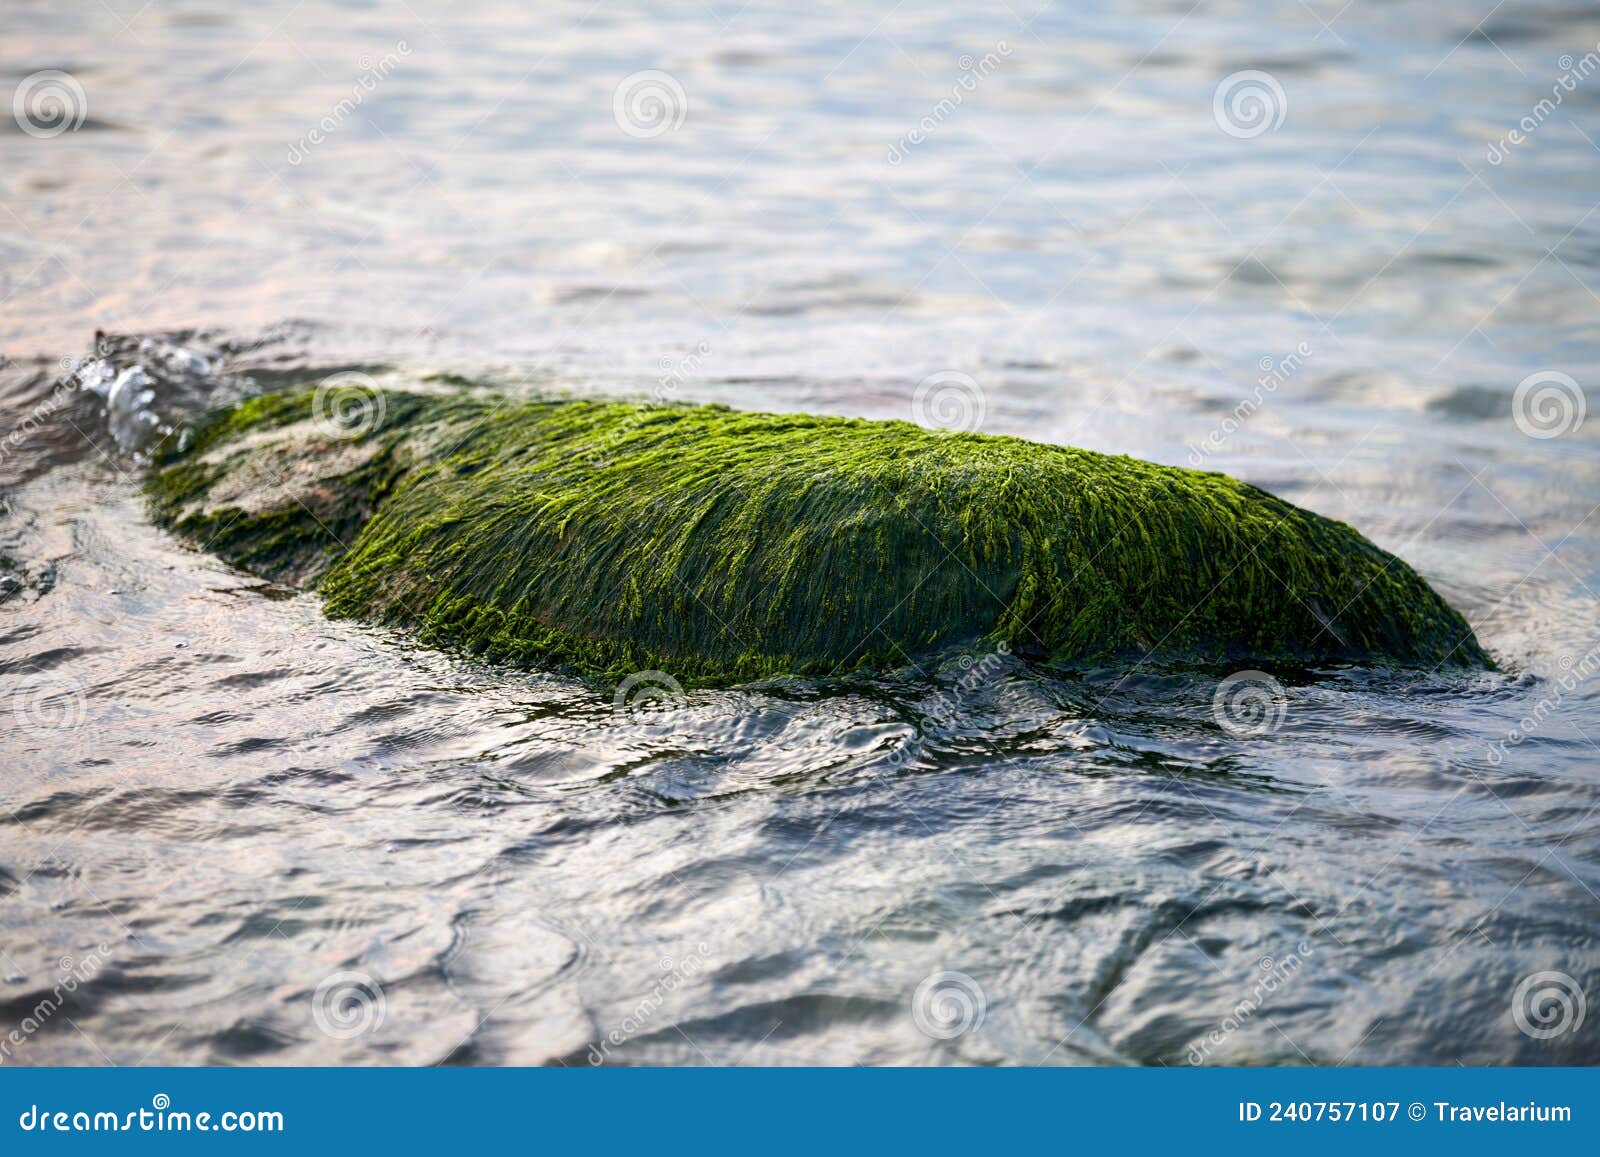 https://thumbs.dreamstime.com/z/algas-marinhas-verdes-cobertas-de-pedra-na-%C3%A1gua-do-mar-belas-musas-%C3%BAmidas-se-aproximam-em-azul-%C3%A0-volta-rocha-coberta-oceano-240757107.jpg